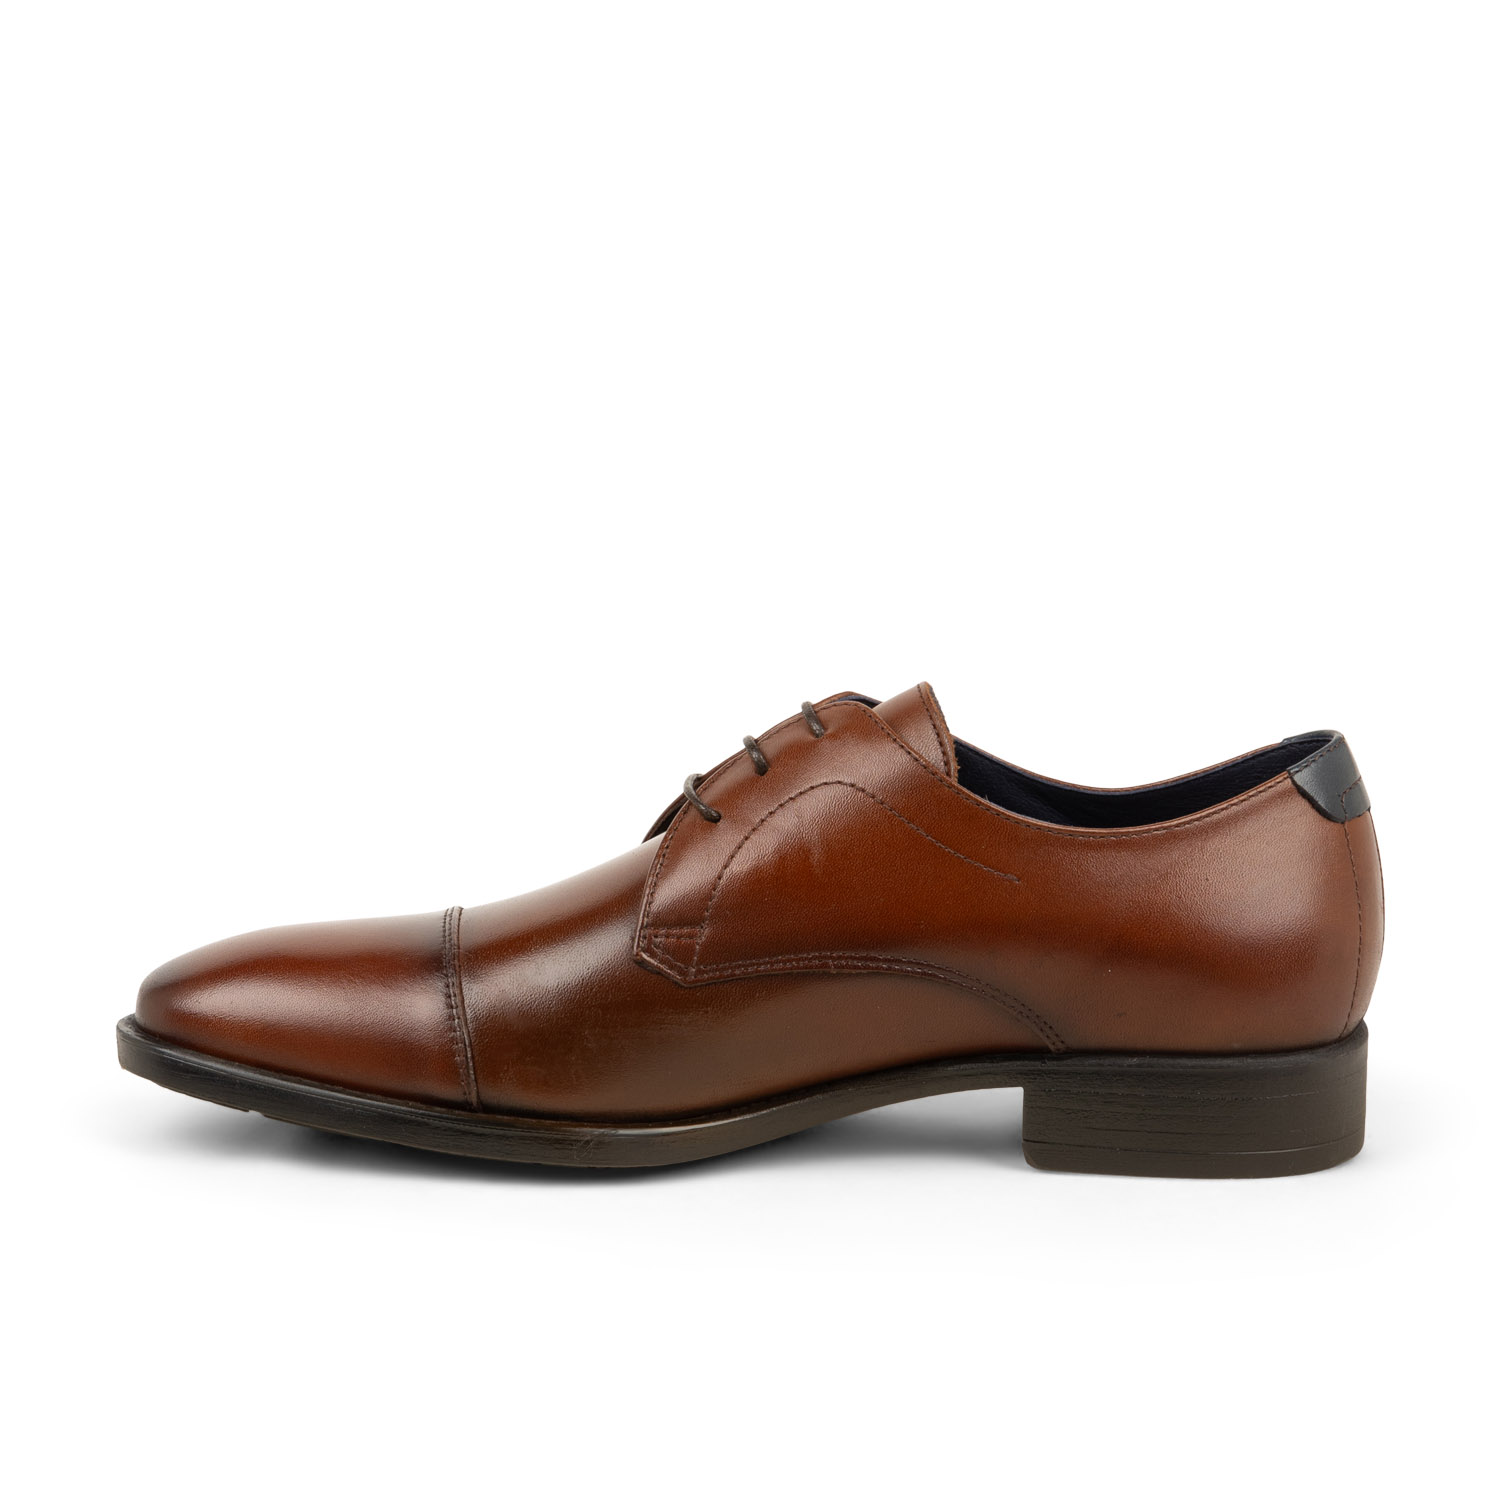 04 - FLUDANDY - FLUCHOS - Chaussures à lacets - Cuir